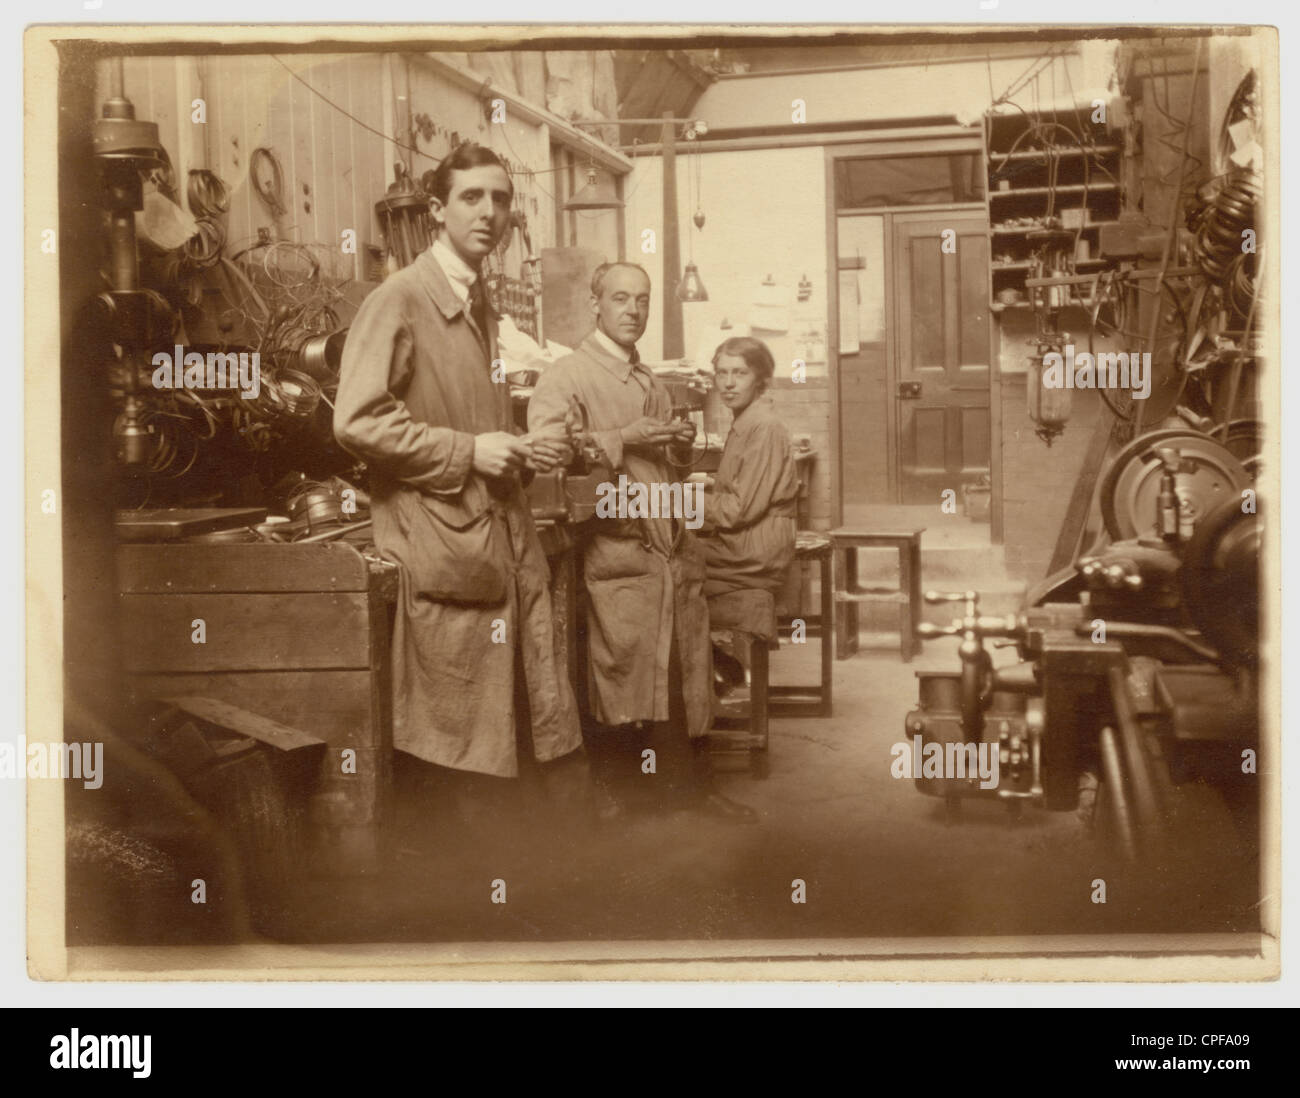 Photo originale d'hommes et d'une femme travaillant dans un atelier d'ingénierie, le groupe regroupe des portraits professionnels. Peut-être faire des réparations, début des années 1900, victorienne, édouardien Royaume-Uni Banque D'Images